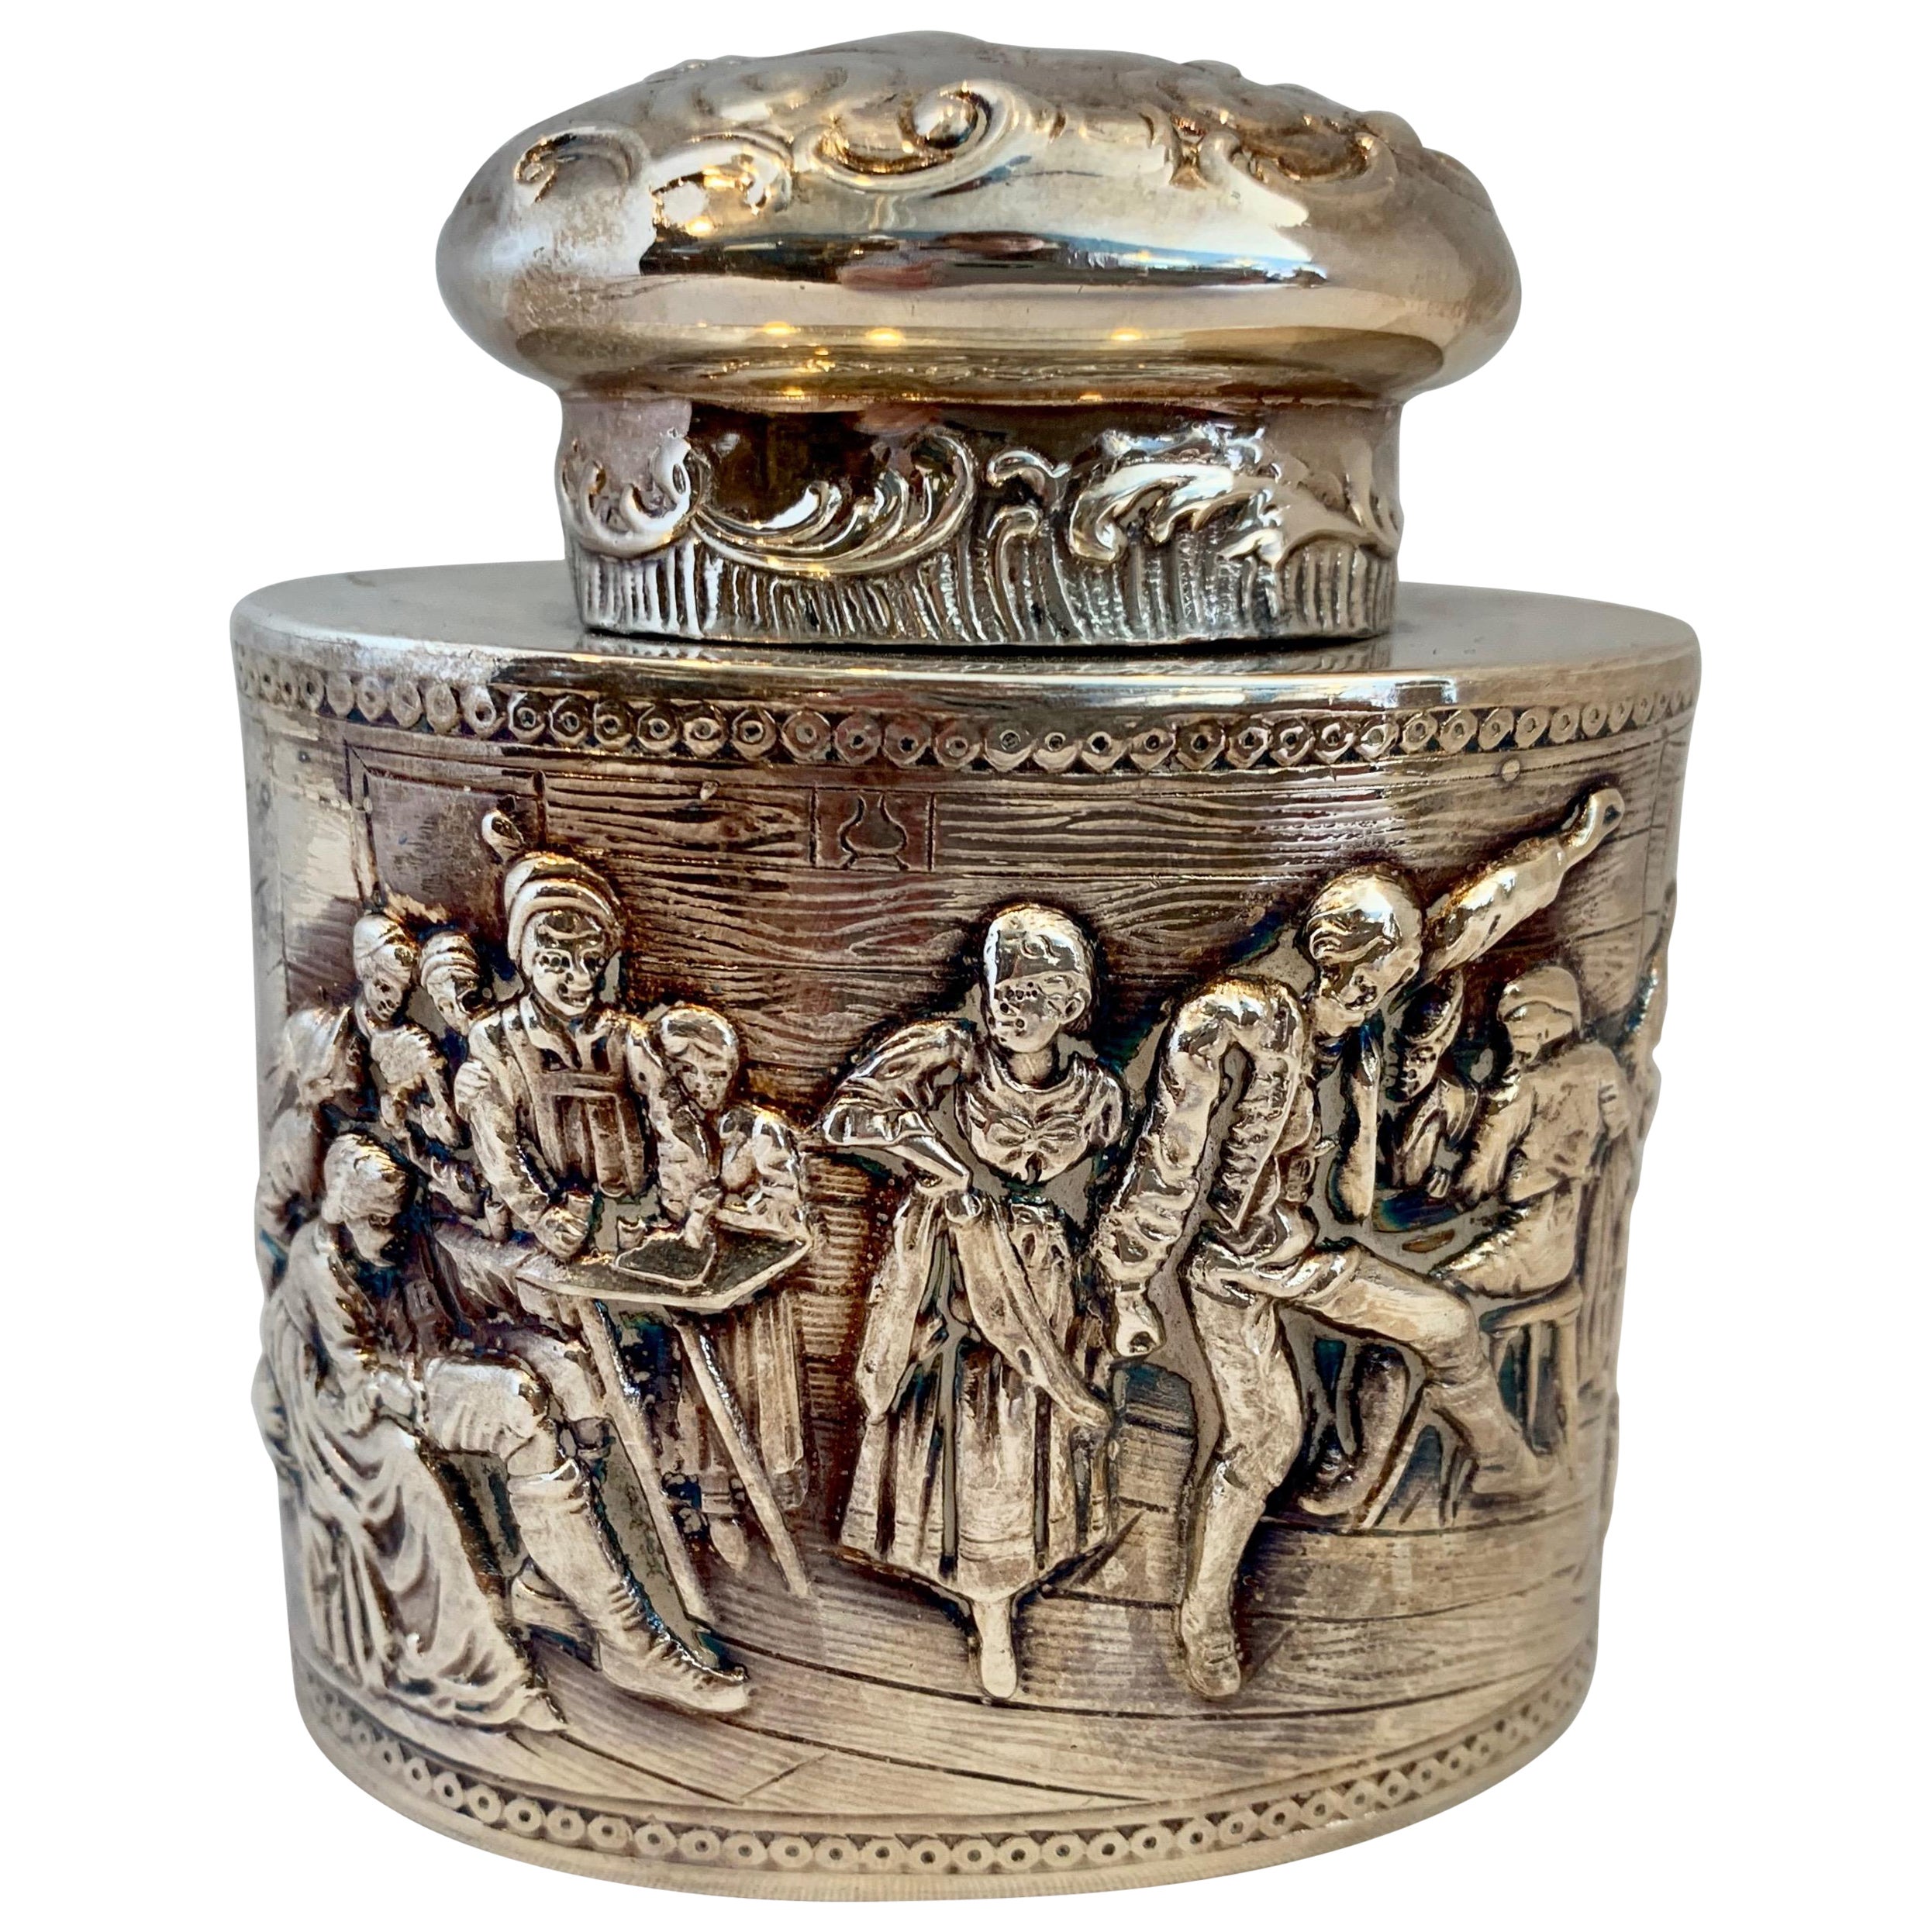 19TH Century Dutch Silver Tea Caddy